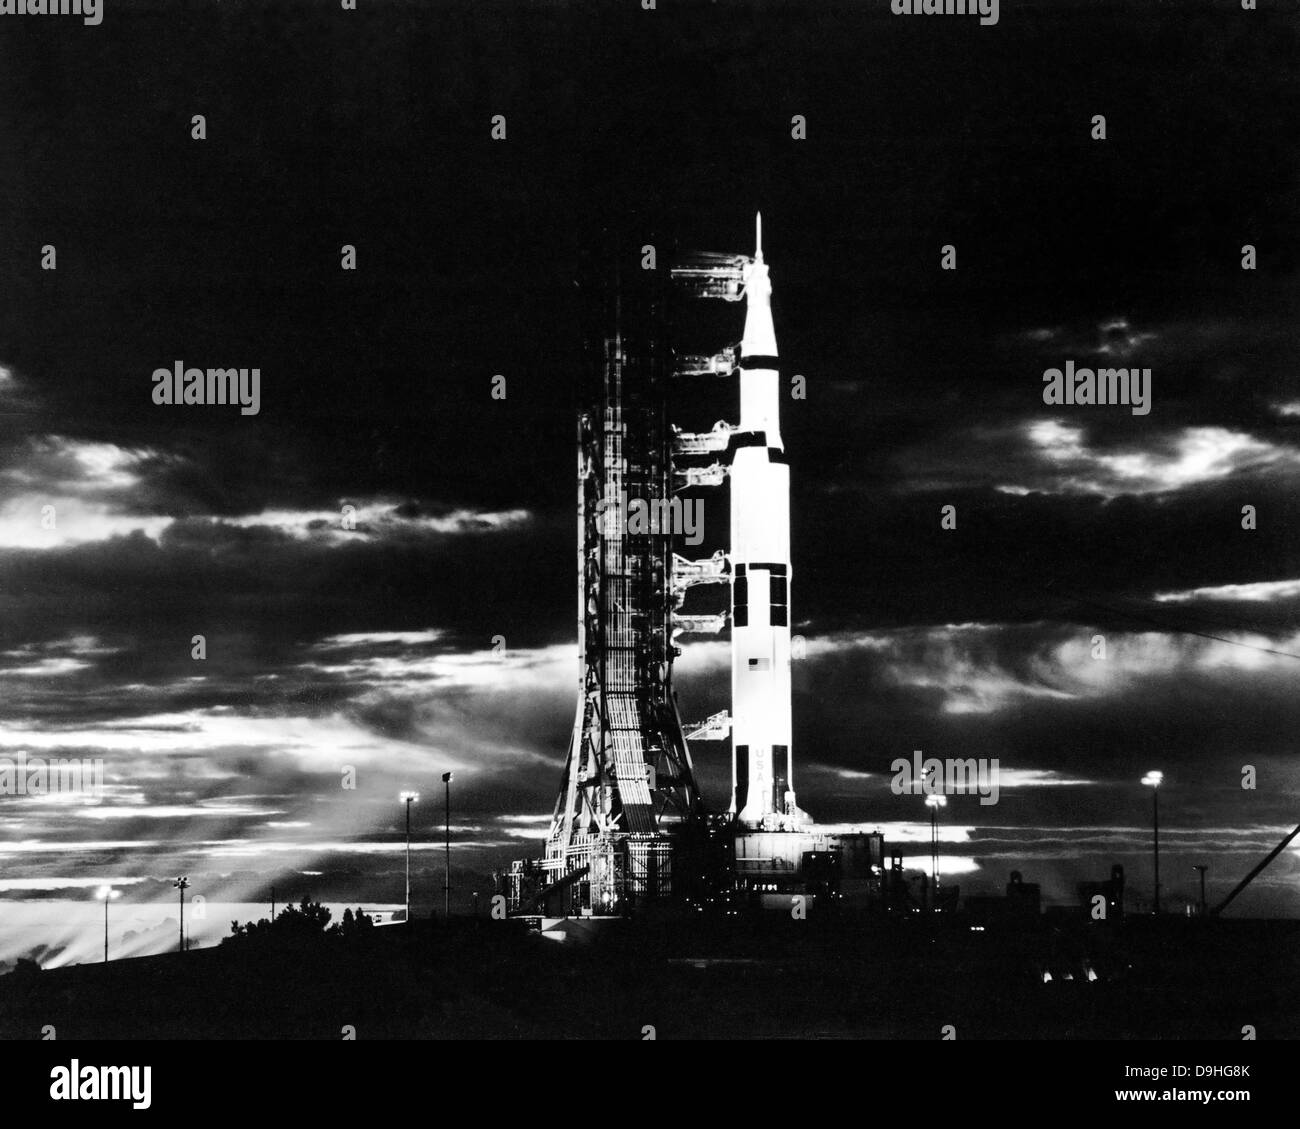 Suchscheinwerfer beleuchten diese Nachtansicht von Apollo 17 Raumfahrzeugen auf seine Launchpad. Stockfoto